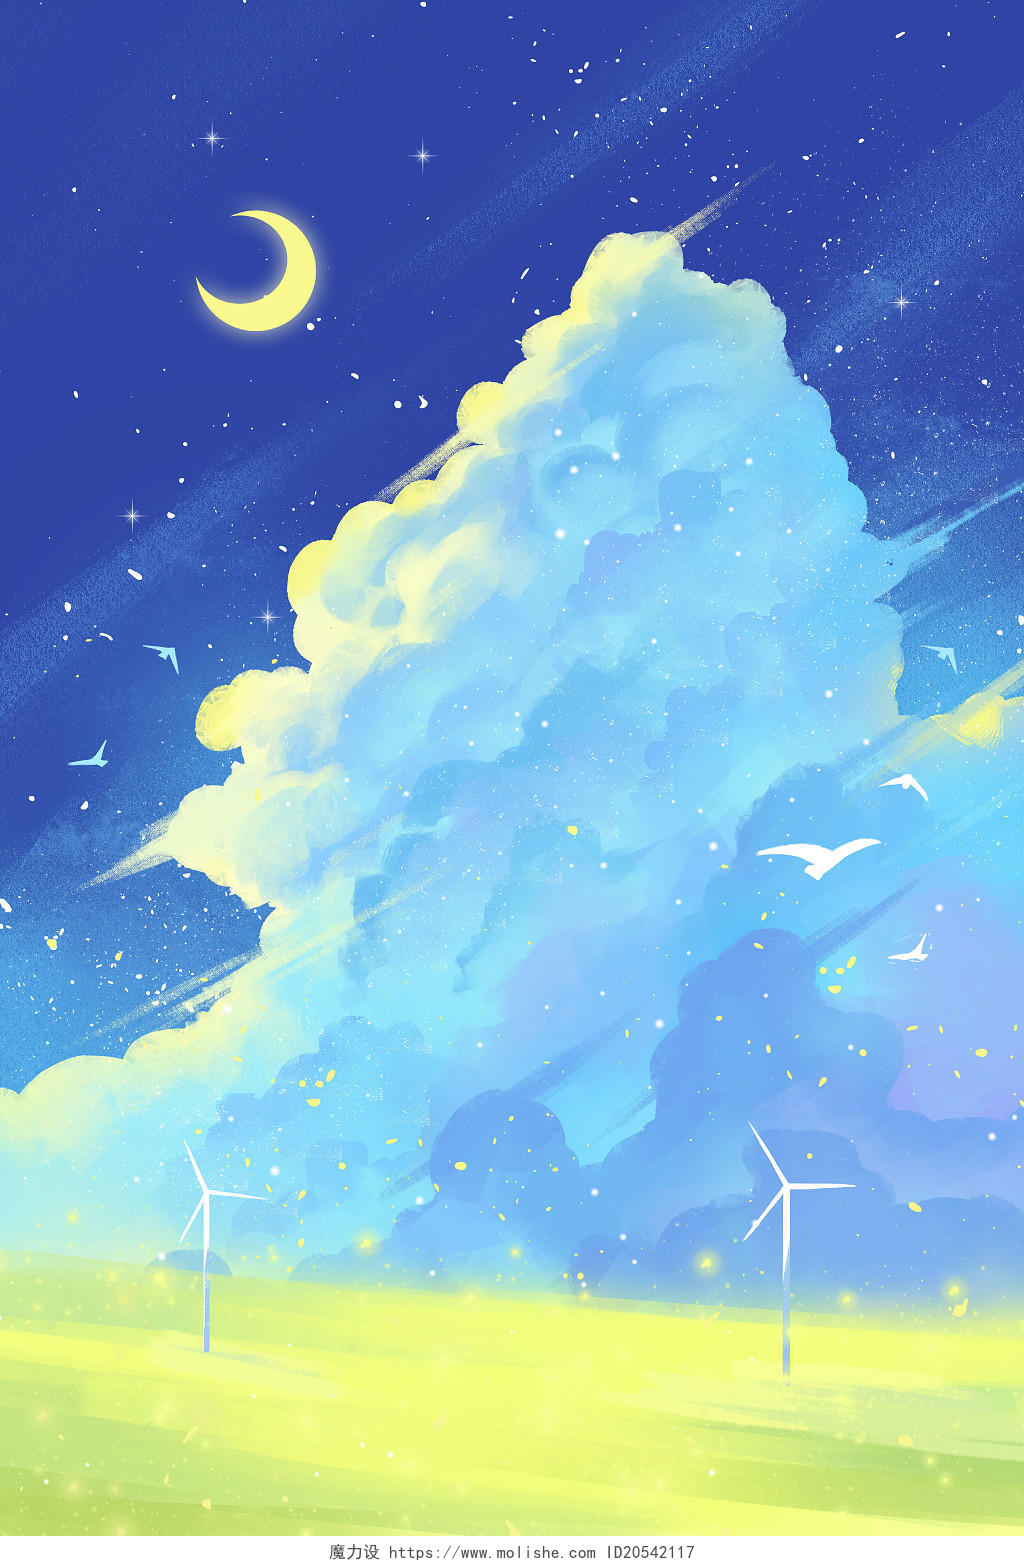 唯美天空插画手绘日系风景背景云层云朵蓝色治愈月亮蓝天白云